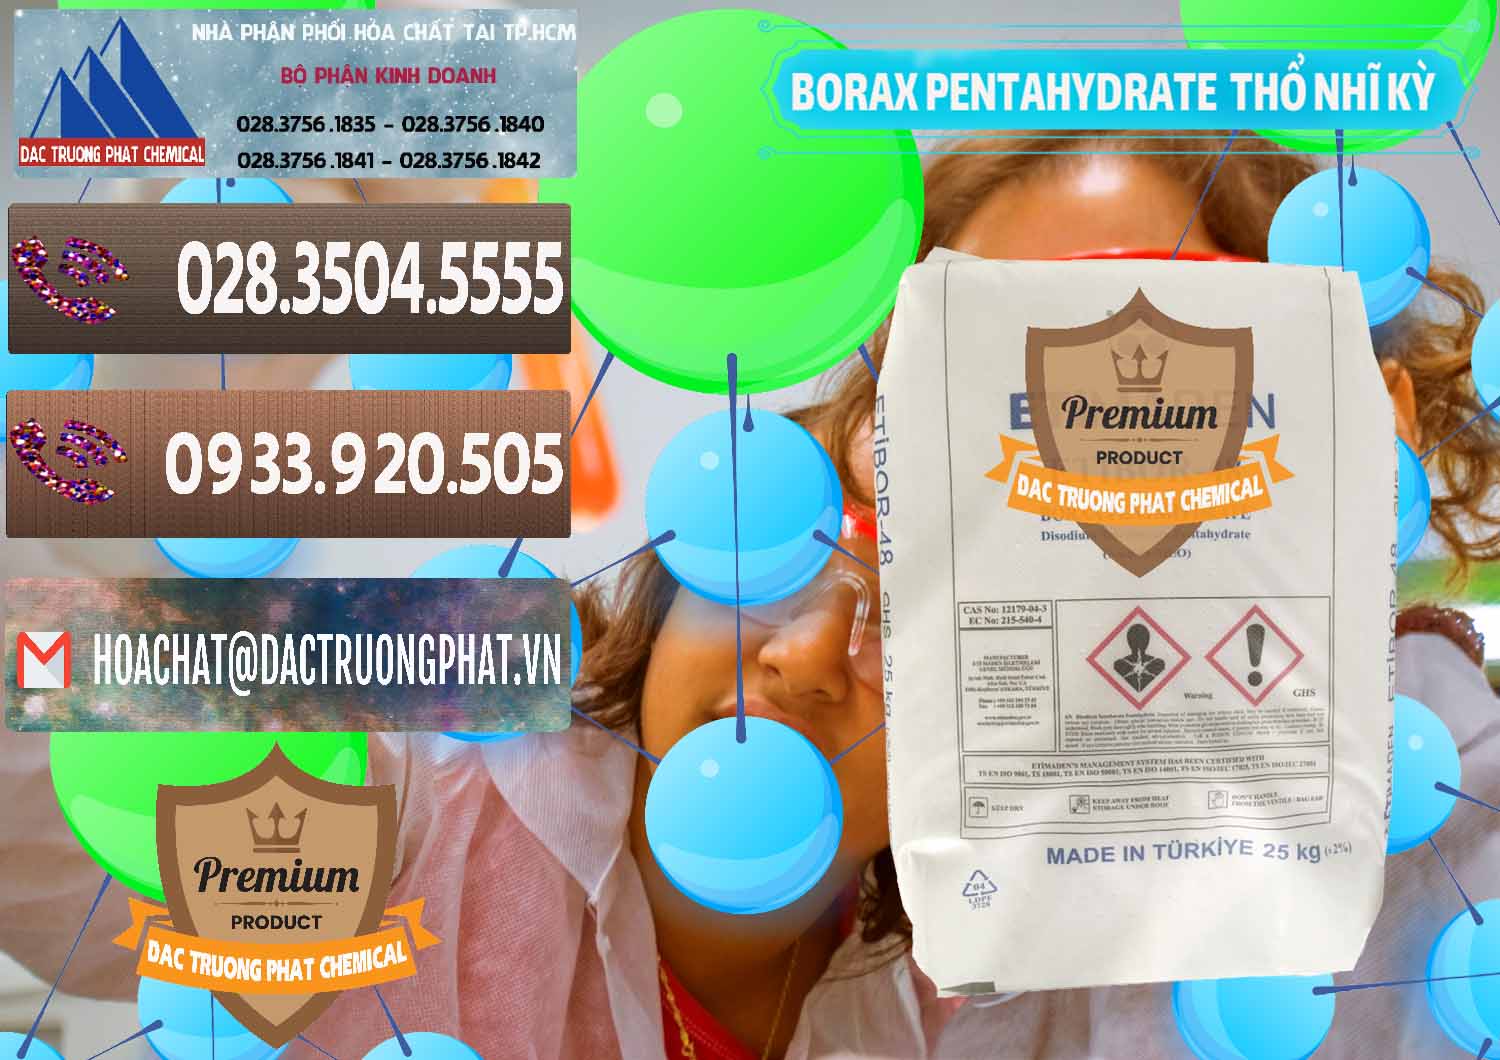 Đơn vị kinh doanh - bán Borax Pentahydrate Thổ Nhĩ Kỳ Turkey - 0431 - Chuyên cung cấp ( nhập khẩu ) hóa chất tại TP.HCM - hoachatviet.net